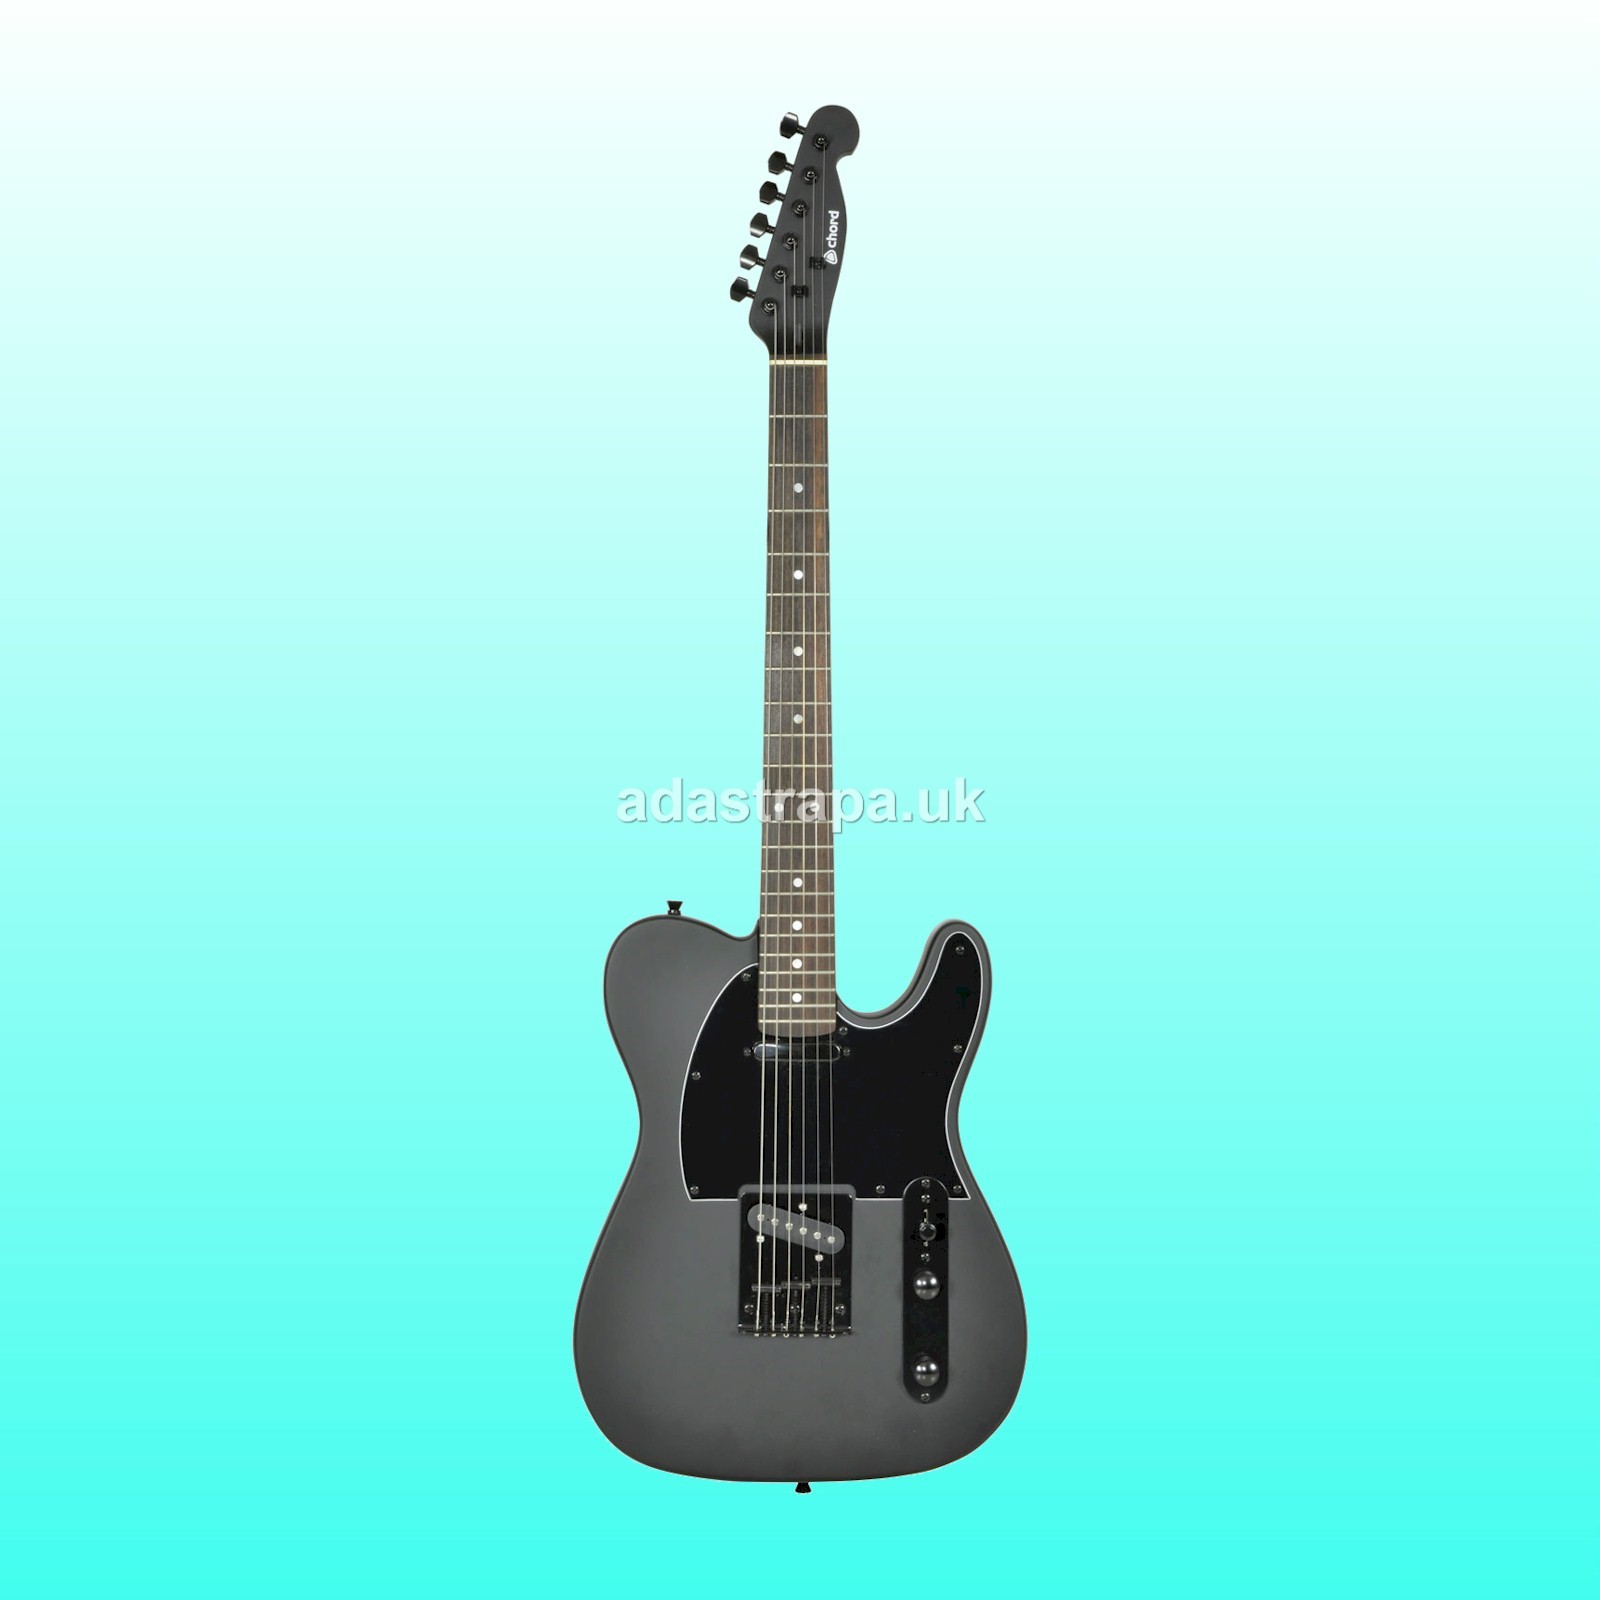 Chord CAL62X Electric Guitar Matte Black - 175.282UK